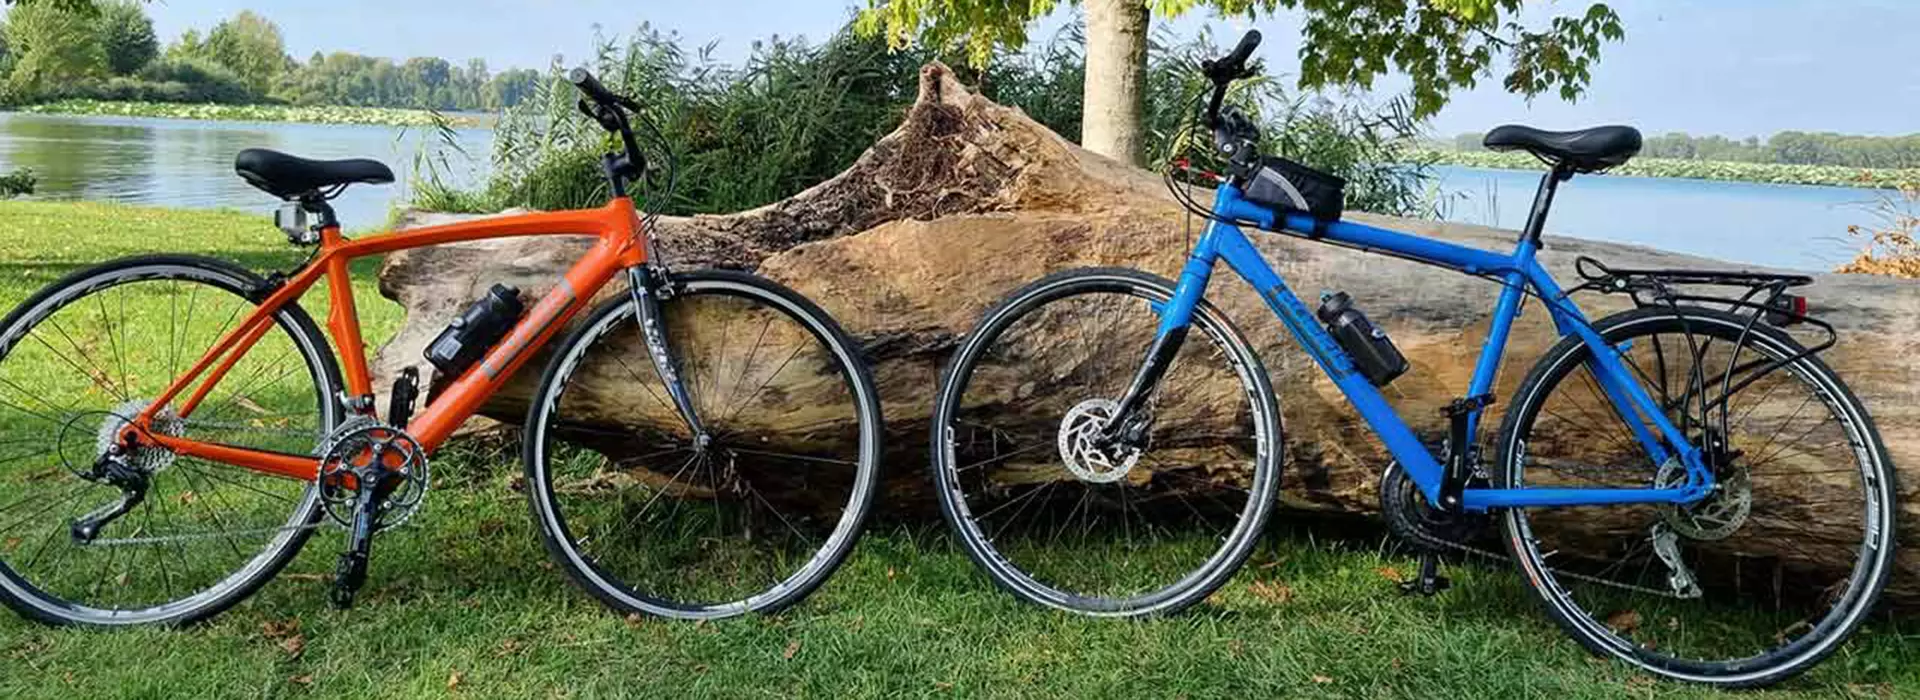 Due bici Boeris Bikes torino una arancione e una blu appogiate su un tronco caduto davanti al fiume Mincio